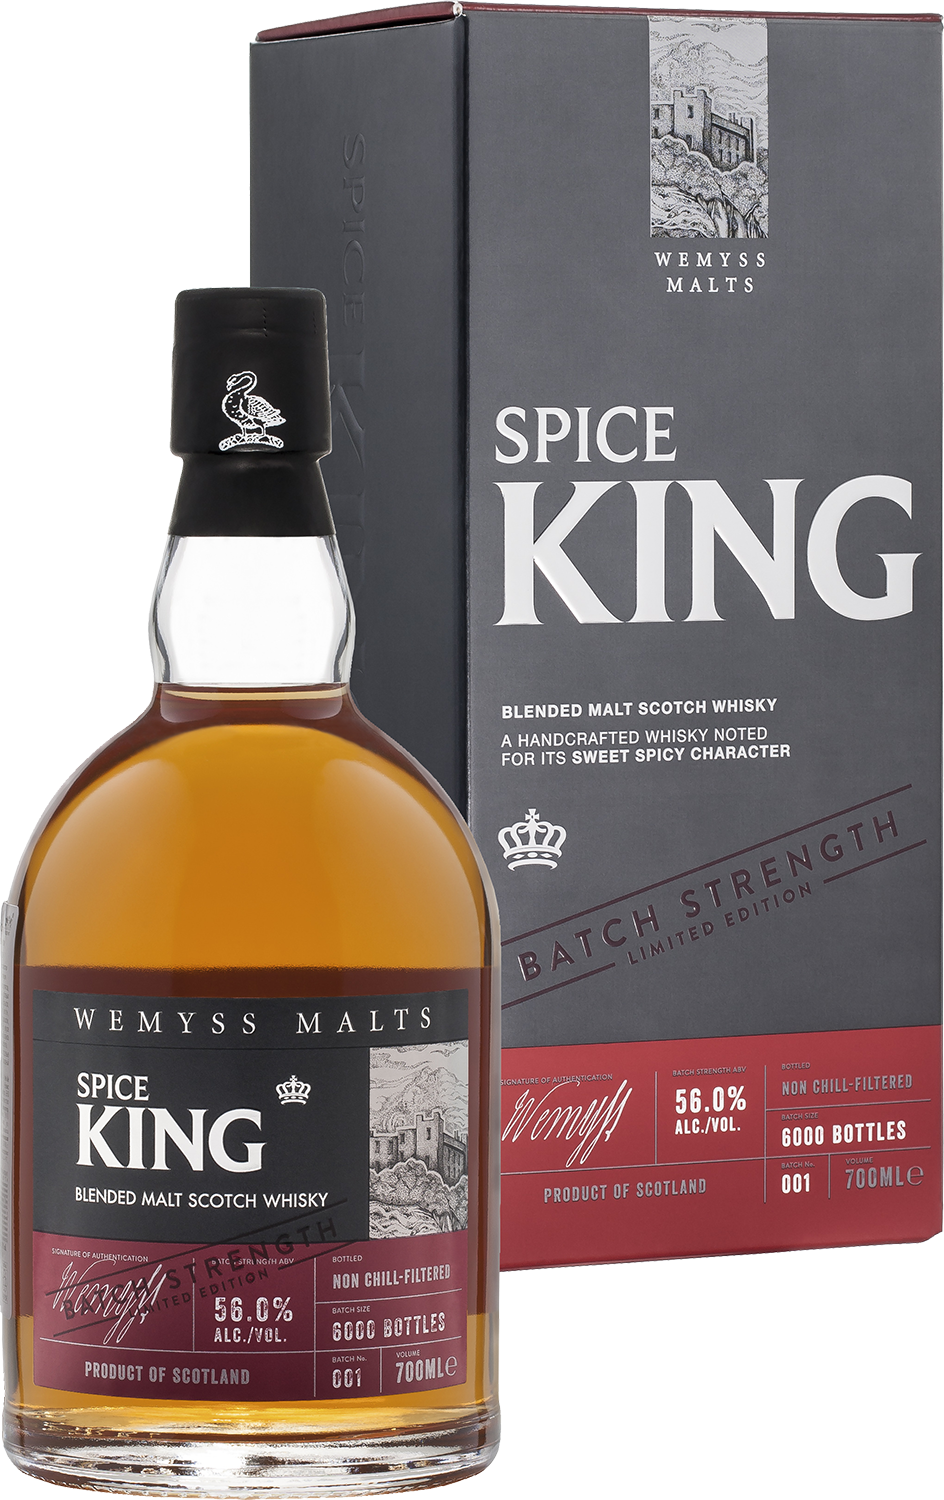 Spice King Batch Strength Wemyss Malts blended malt scotch whisky hinch small batch blended irish whisky